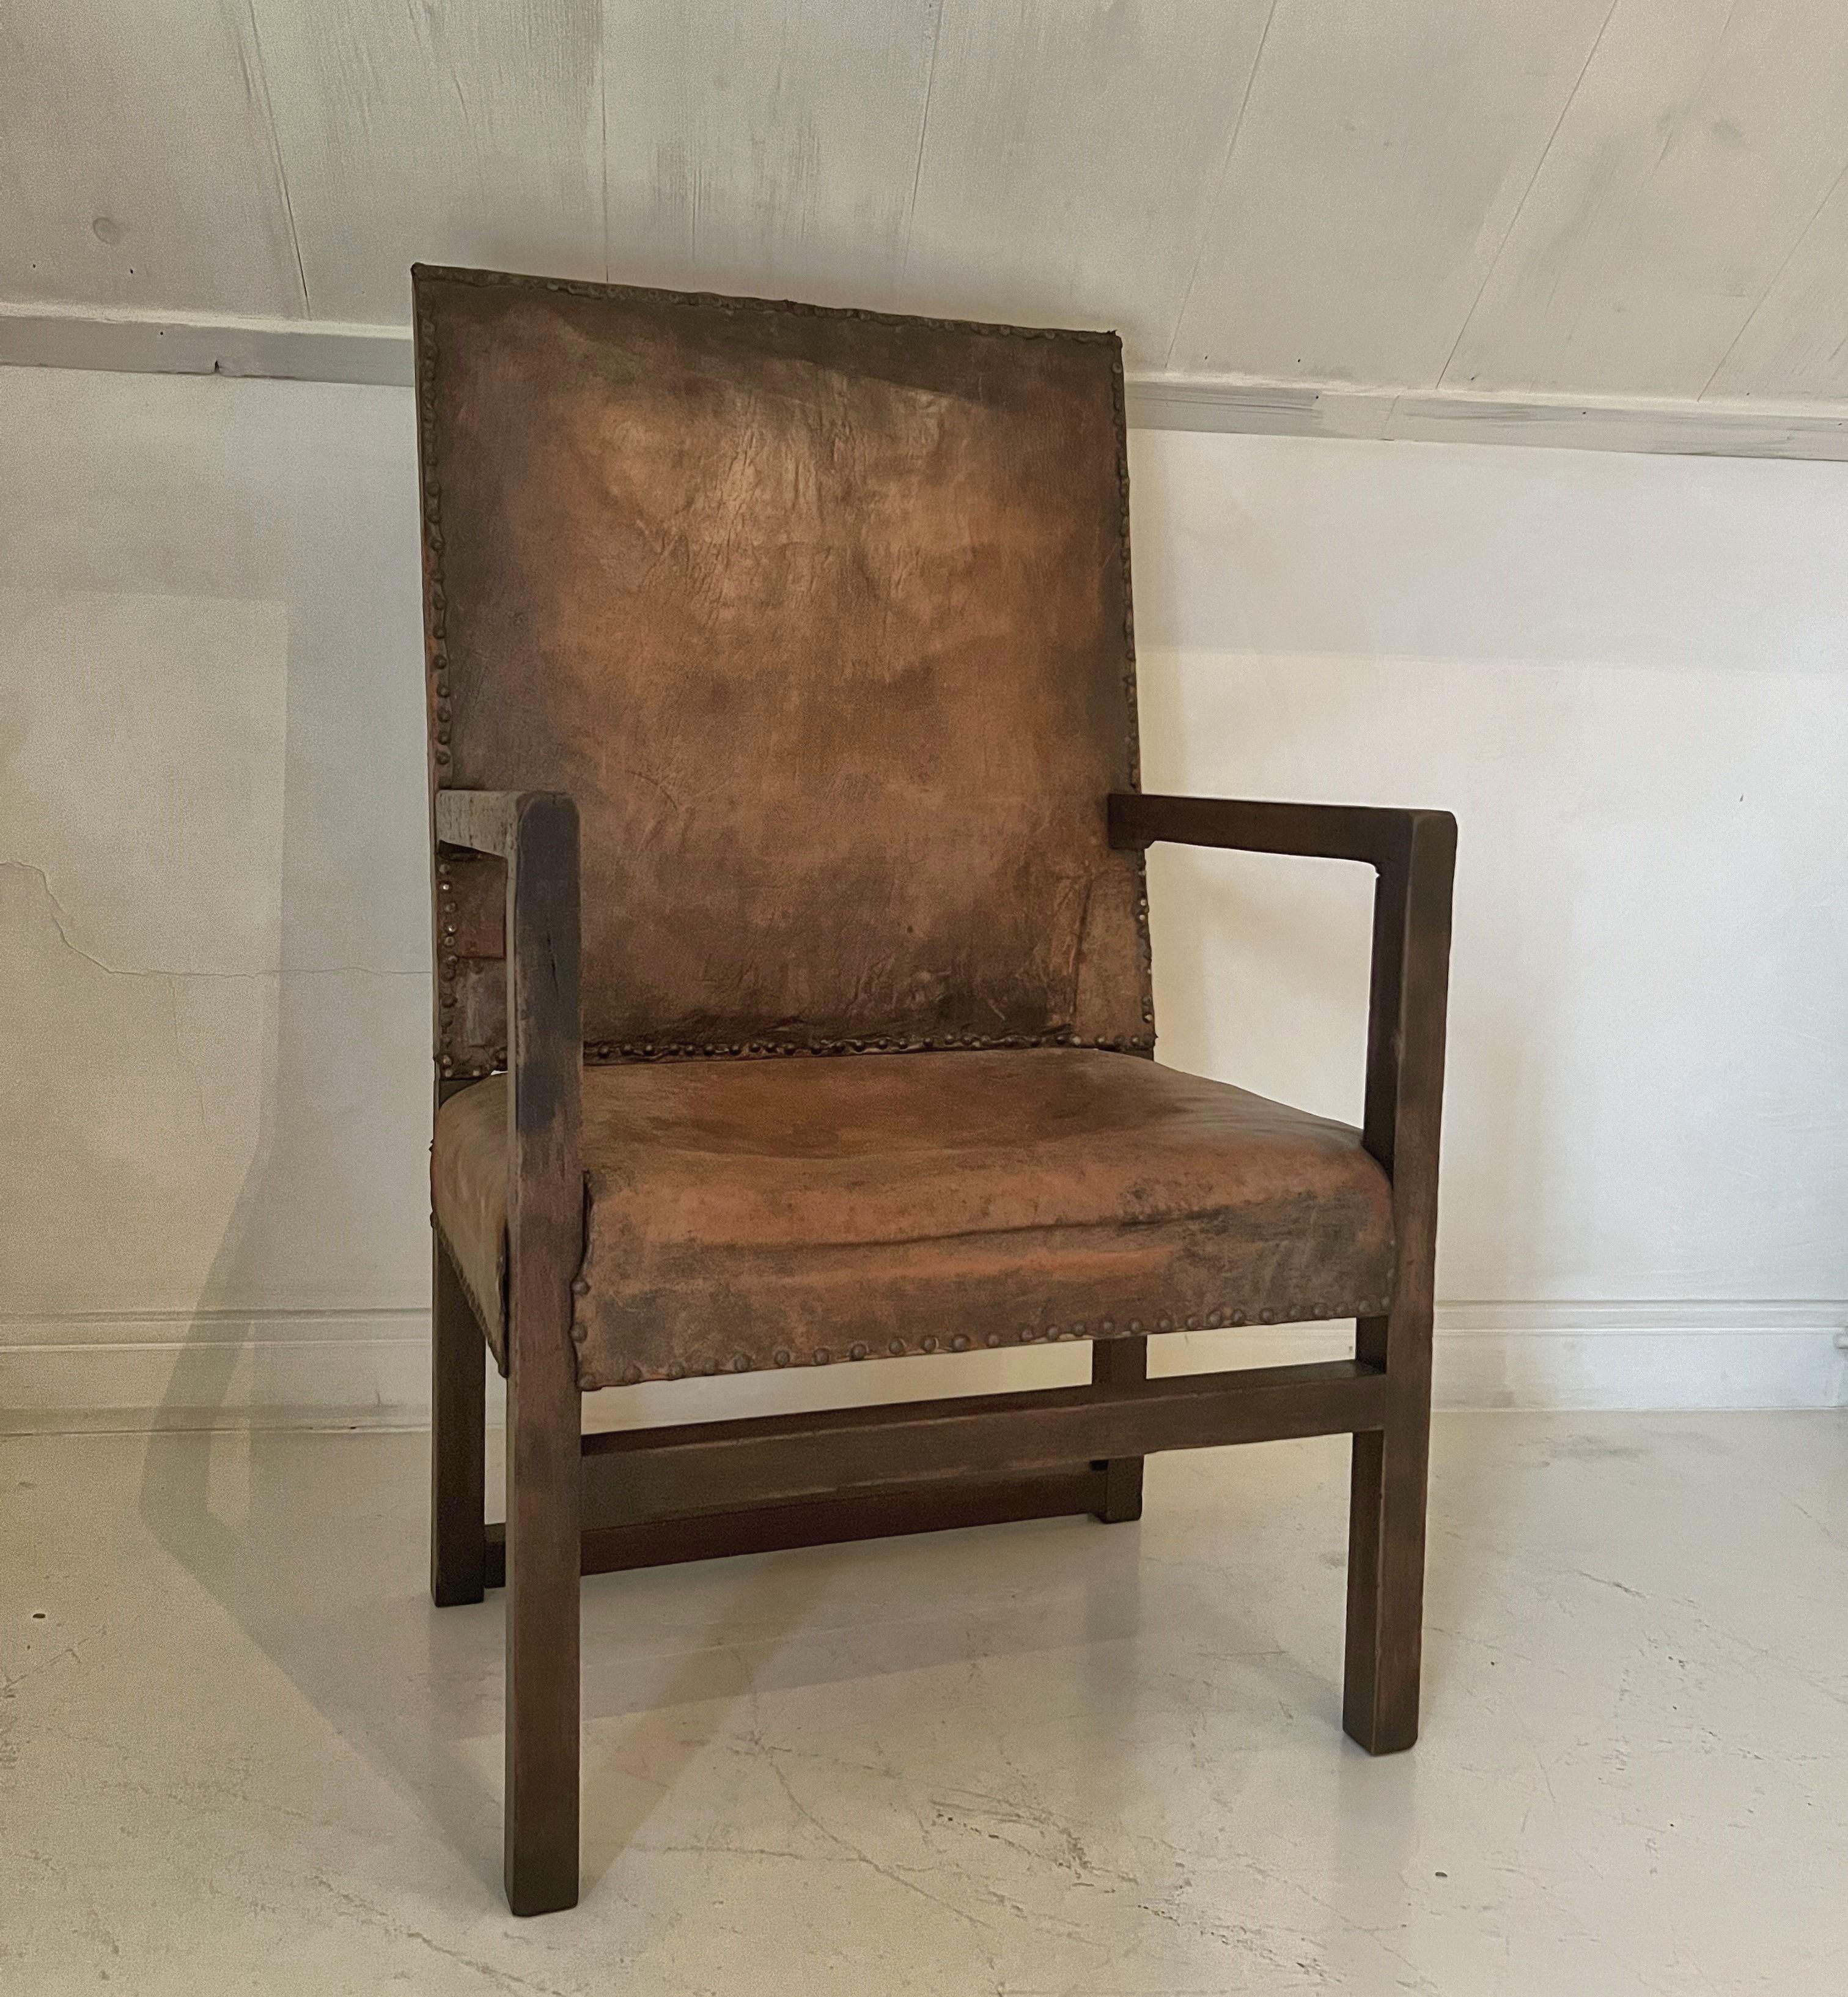 Ein Sessel aus dem 17. Jahrhundert mit schön patiniertem Nussbaum und Leder. Das Design ist fast zeitlos mit einfachen, aber perfekt proportionierten geraden Linien. Stabil und sehr bequem. Alles in allem ein Stück, das in jede Umgebung passen